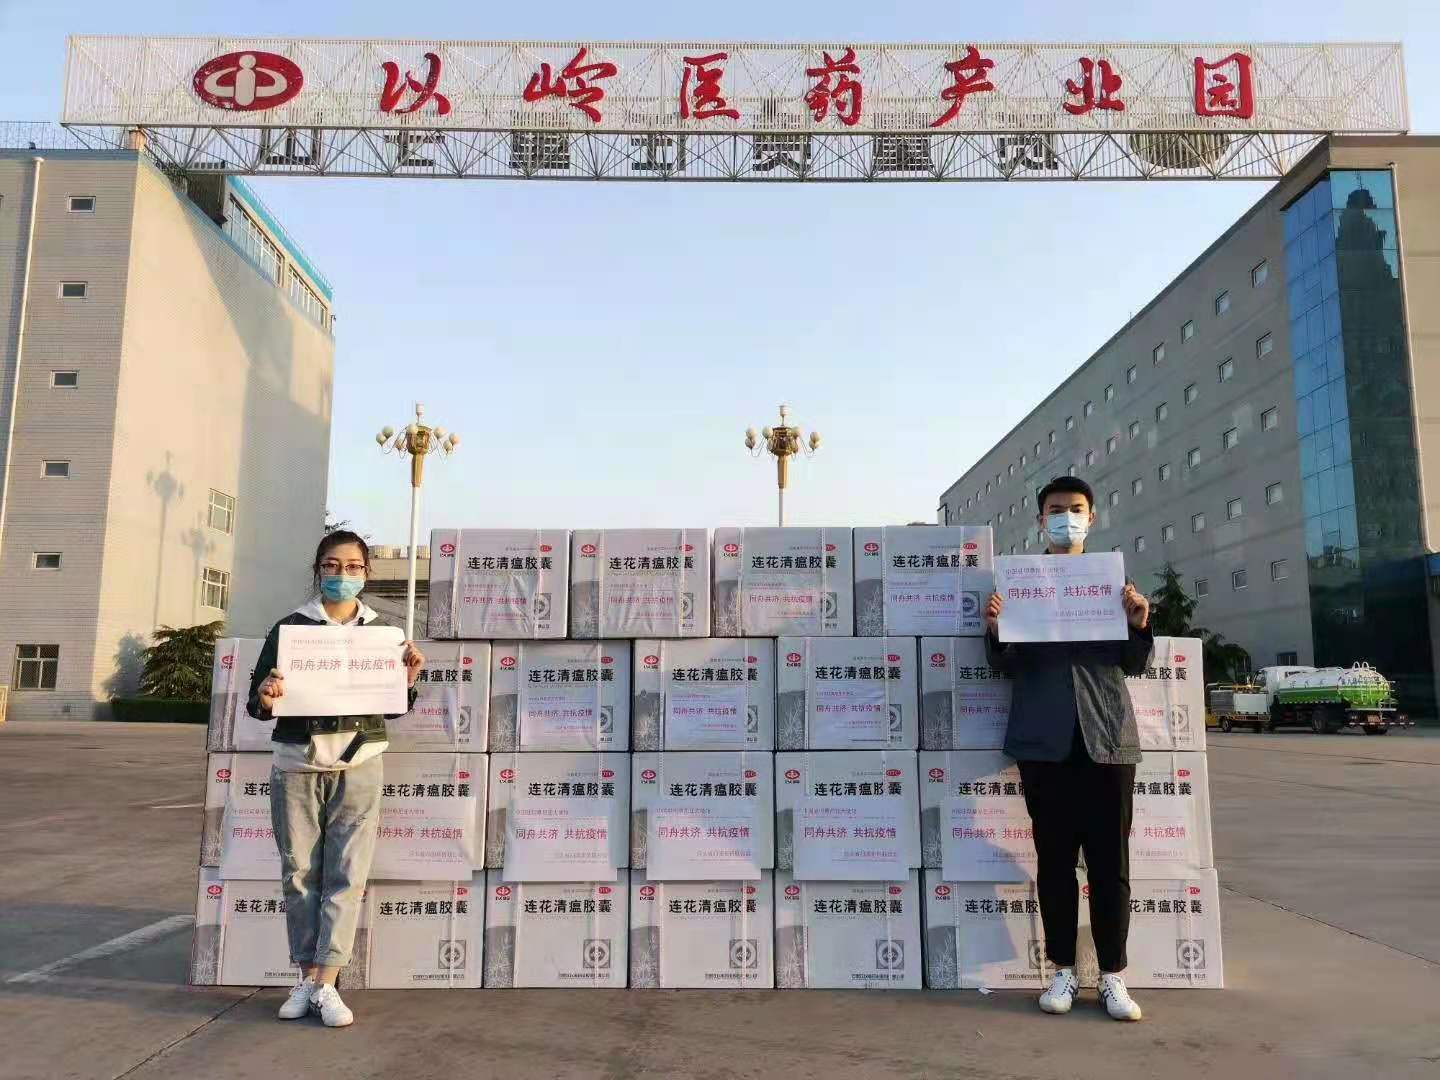 以岭药业向中国红十字基金会捐赠5000万元款物启动“连花呼吸健康公益行”项目